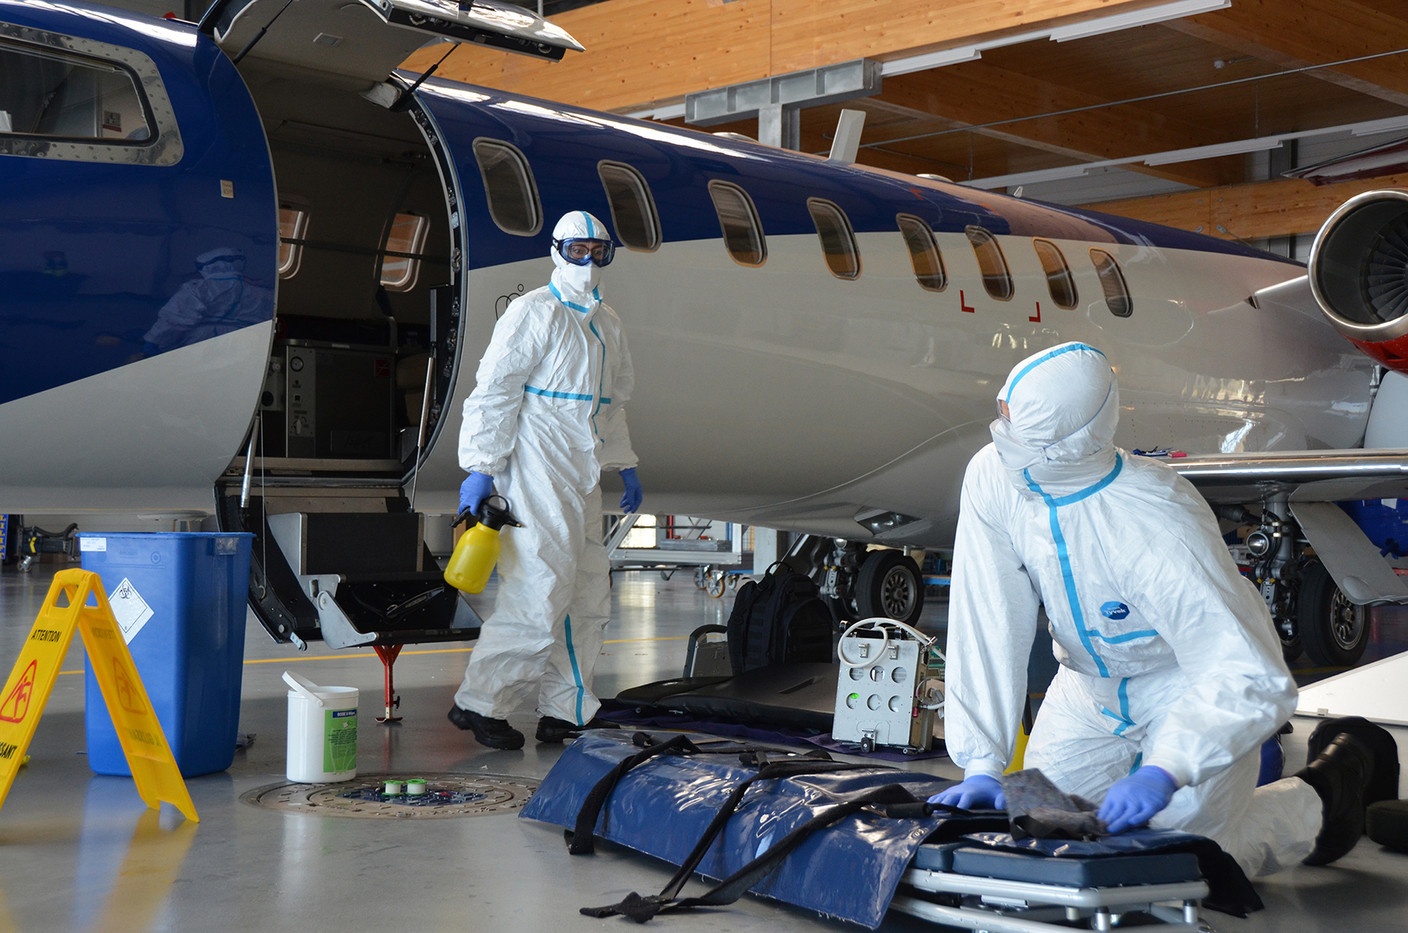 Un équipage qui dispose d’un matériel adapté à ces circonstances extrêmes. Luxembourg Air Rescue